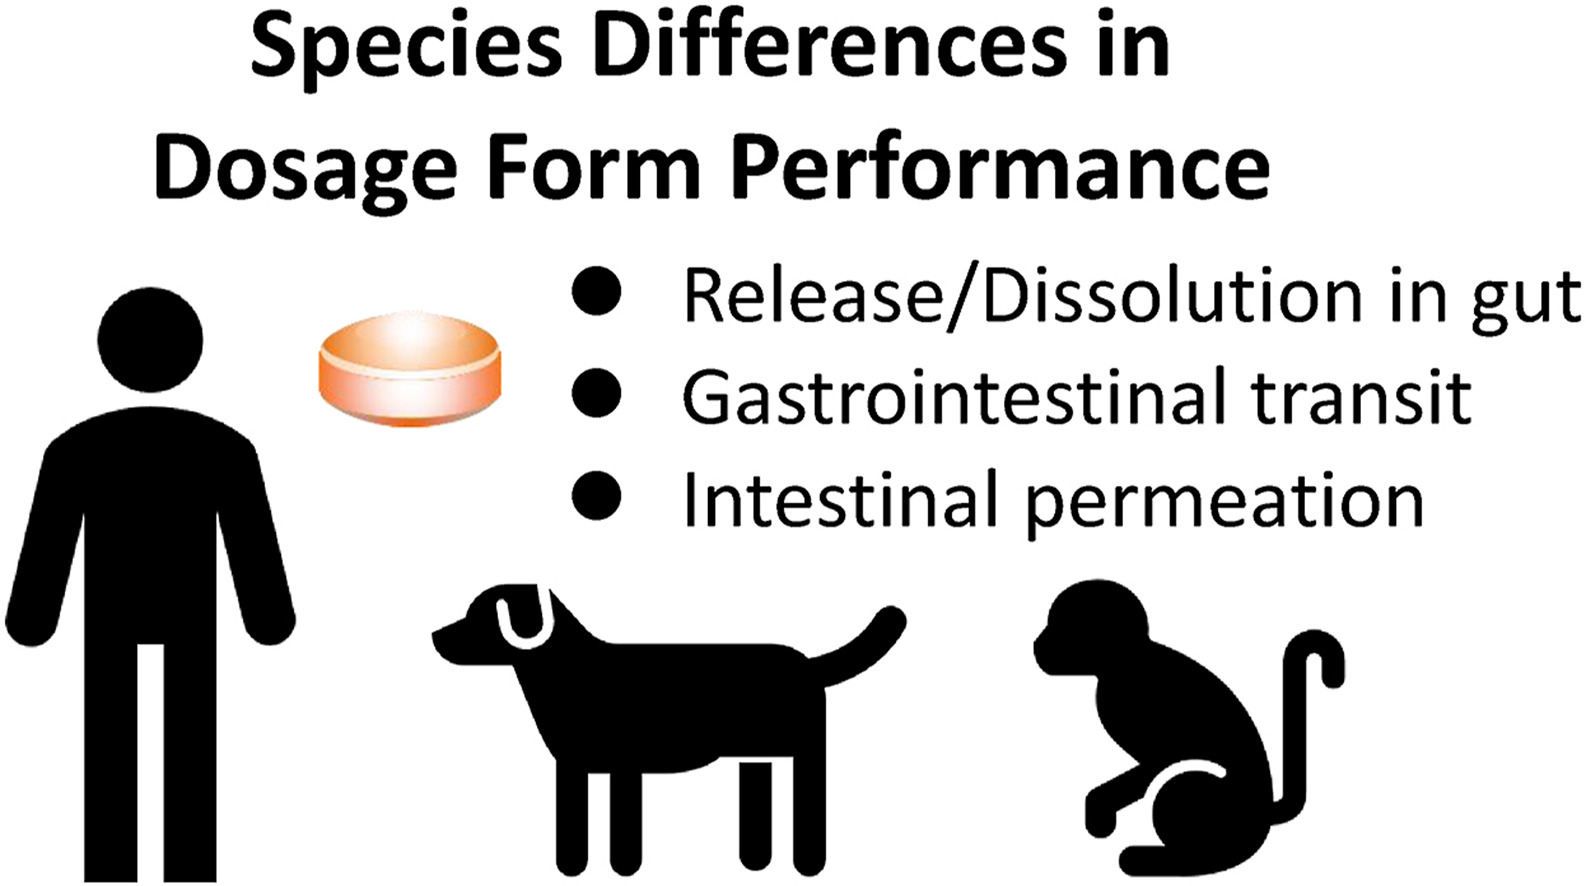 resumo gráfico das diferenças entre espécies na fisiologia gastrointestinal que afetam o desempenho in vivo de formas de dosagem farmacêuticas sólidas orais